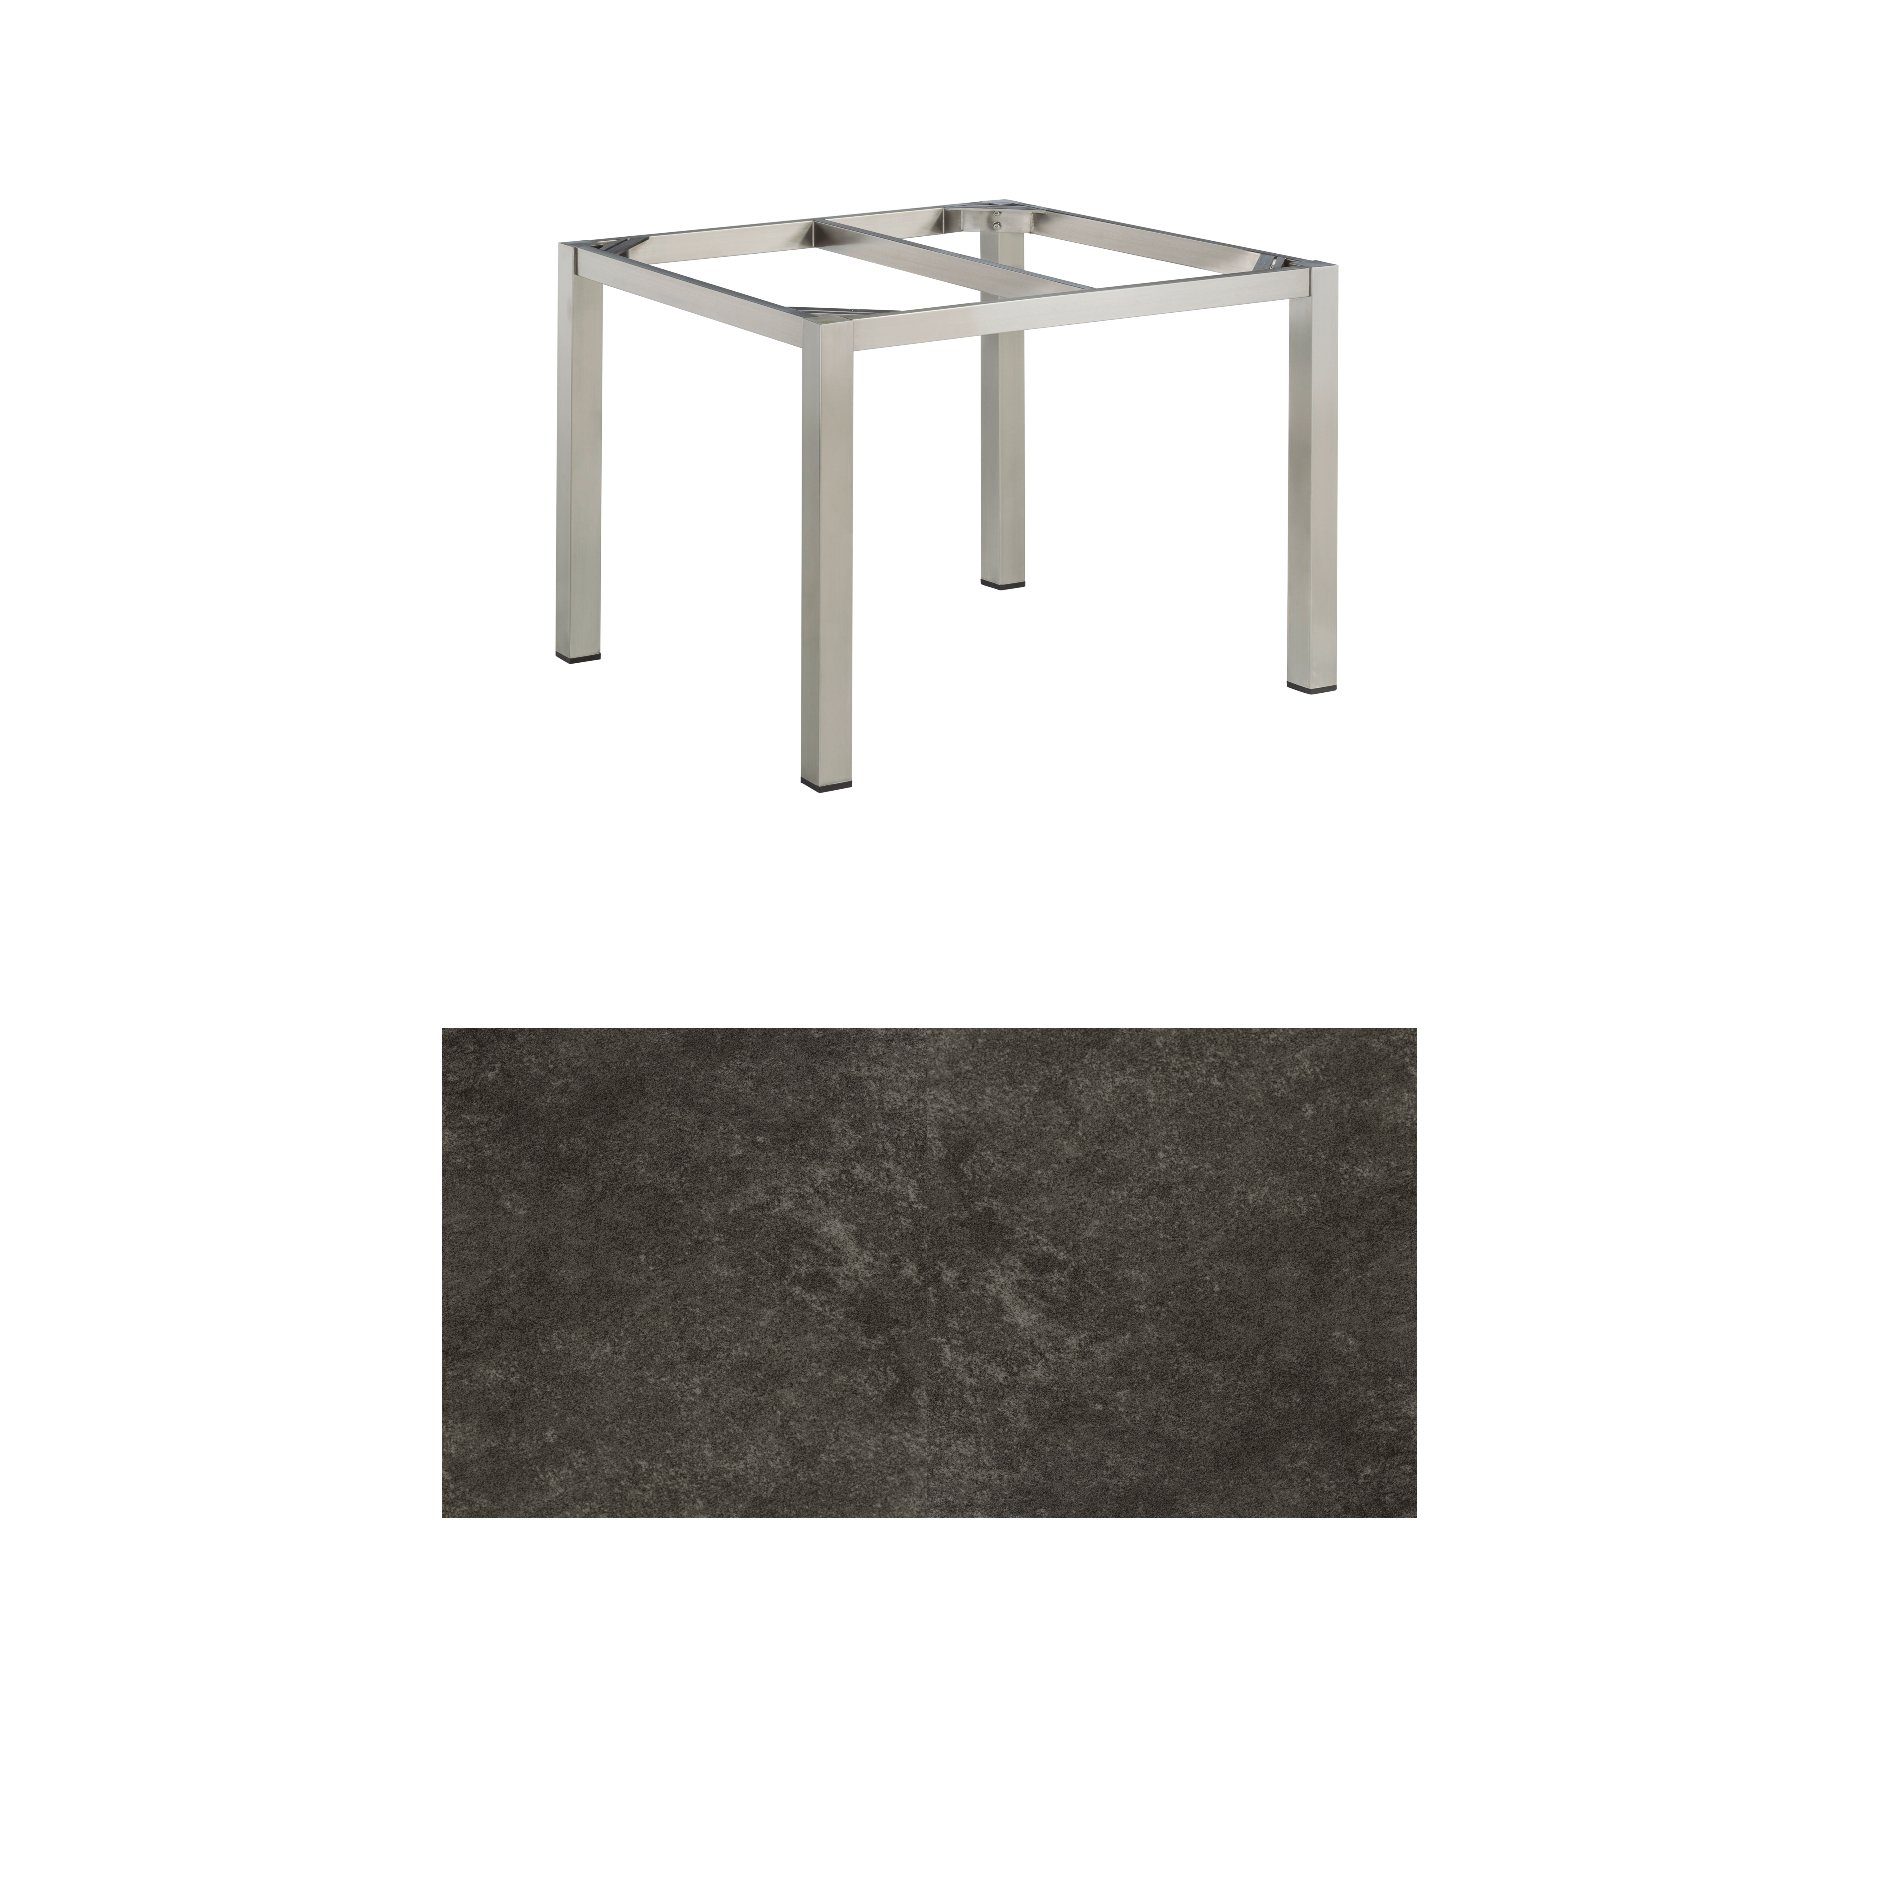 Kettler Gartentisch, Tischgestell 95x95cm "Cubic", Edelstahl, mit Tischplatte Keramik anthrazit